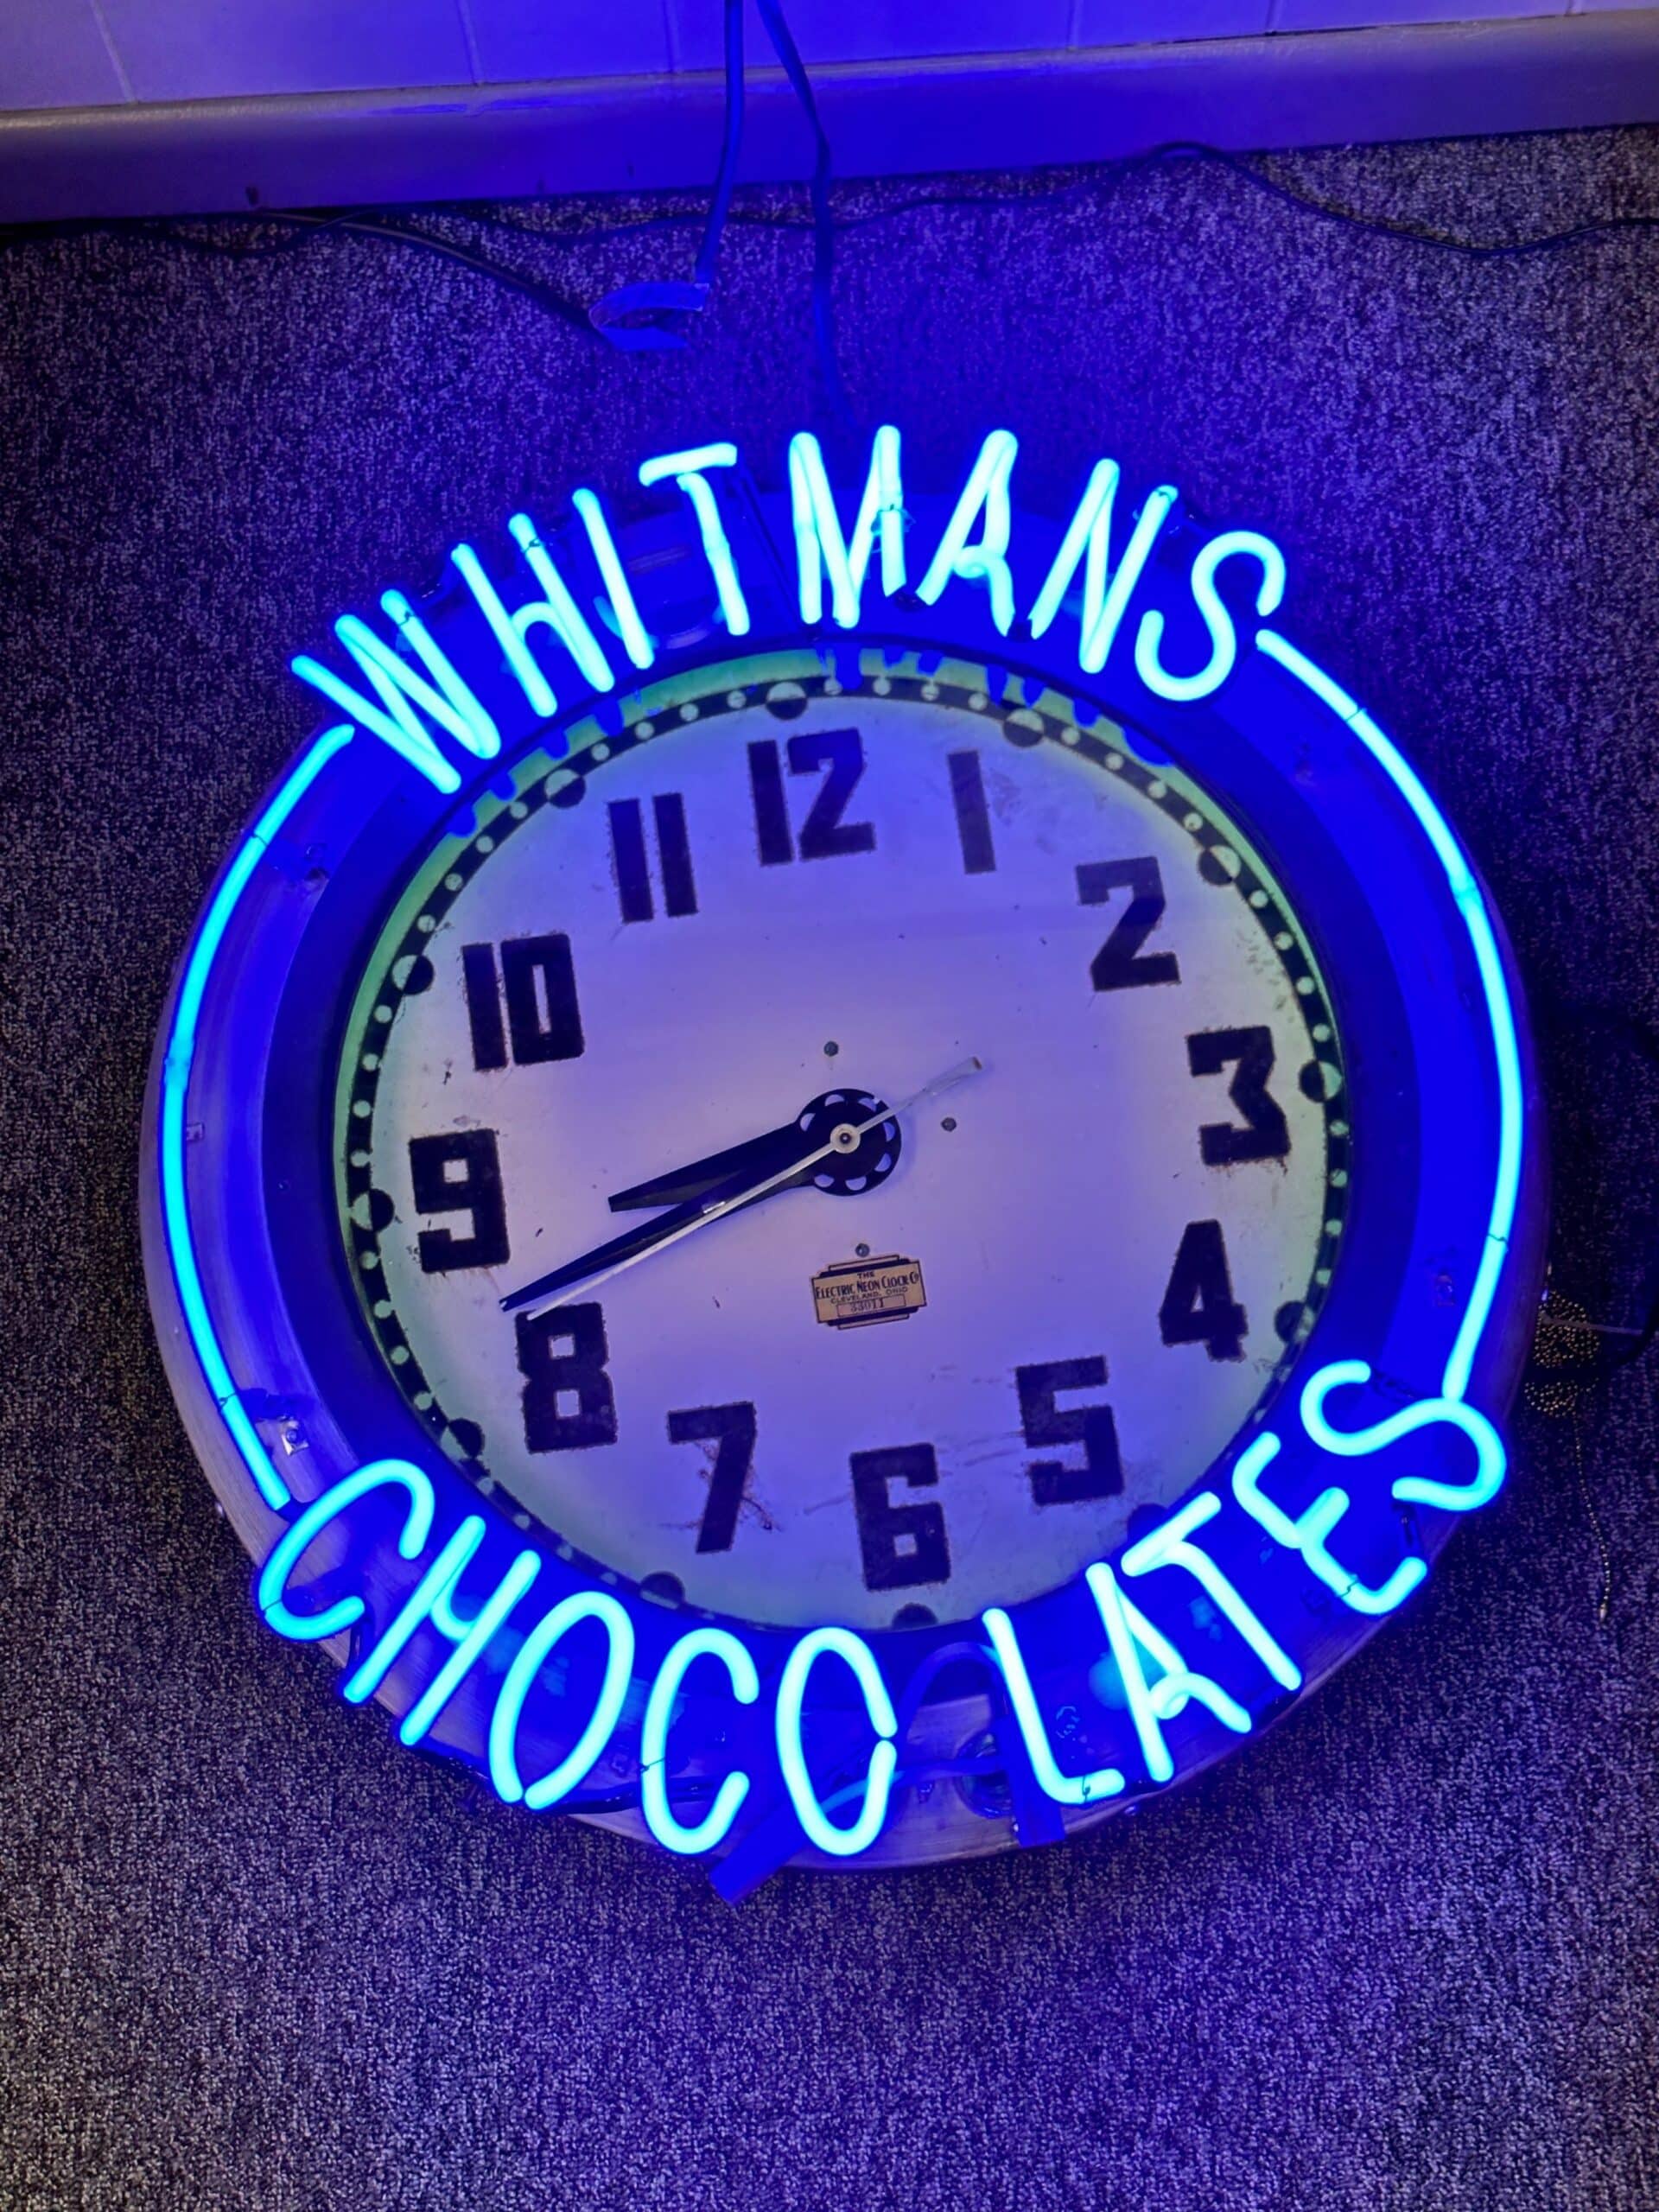 Whitman's Chocolate